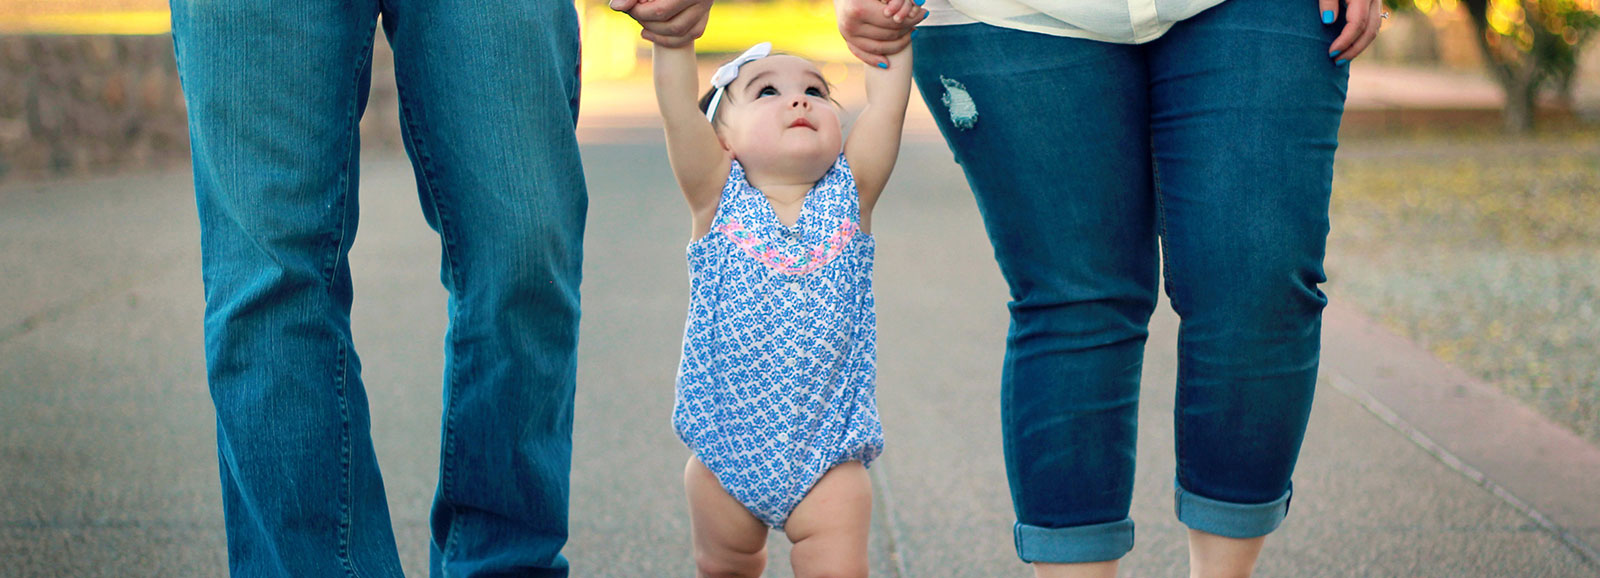 baby standing between parent's legs